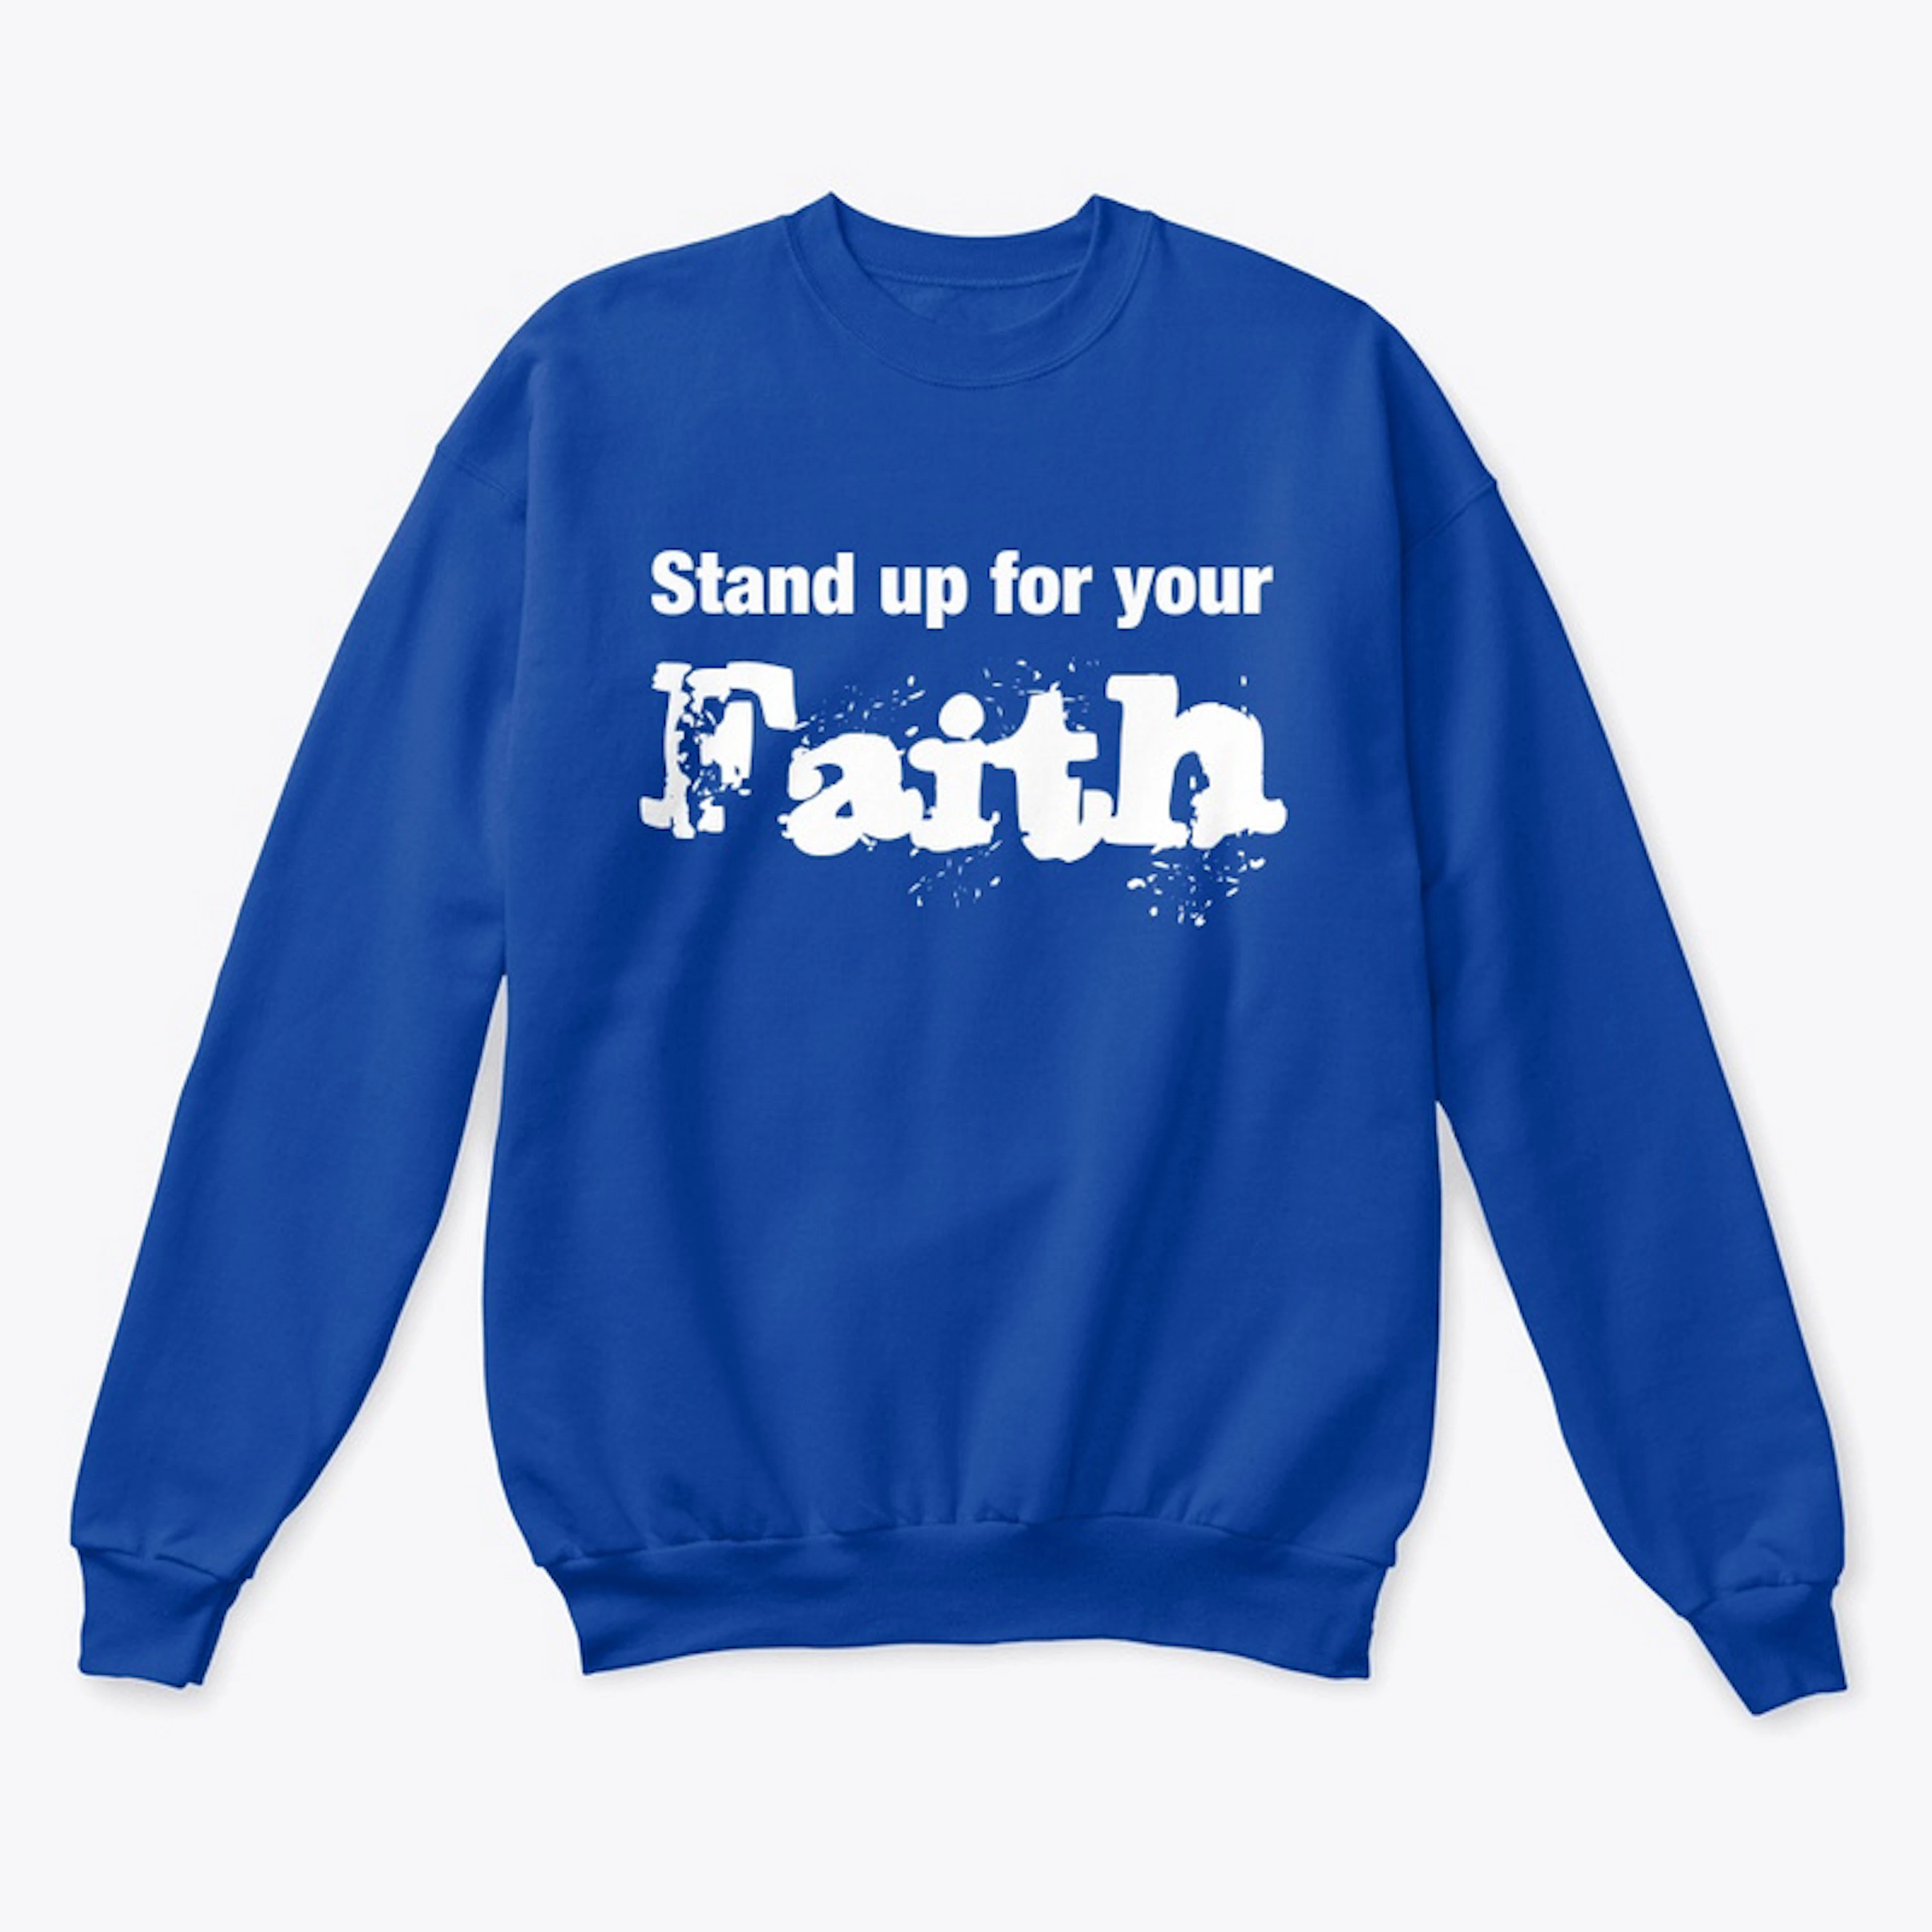 By faith 